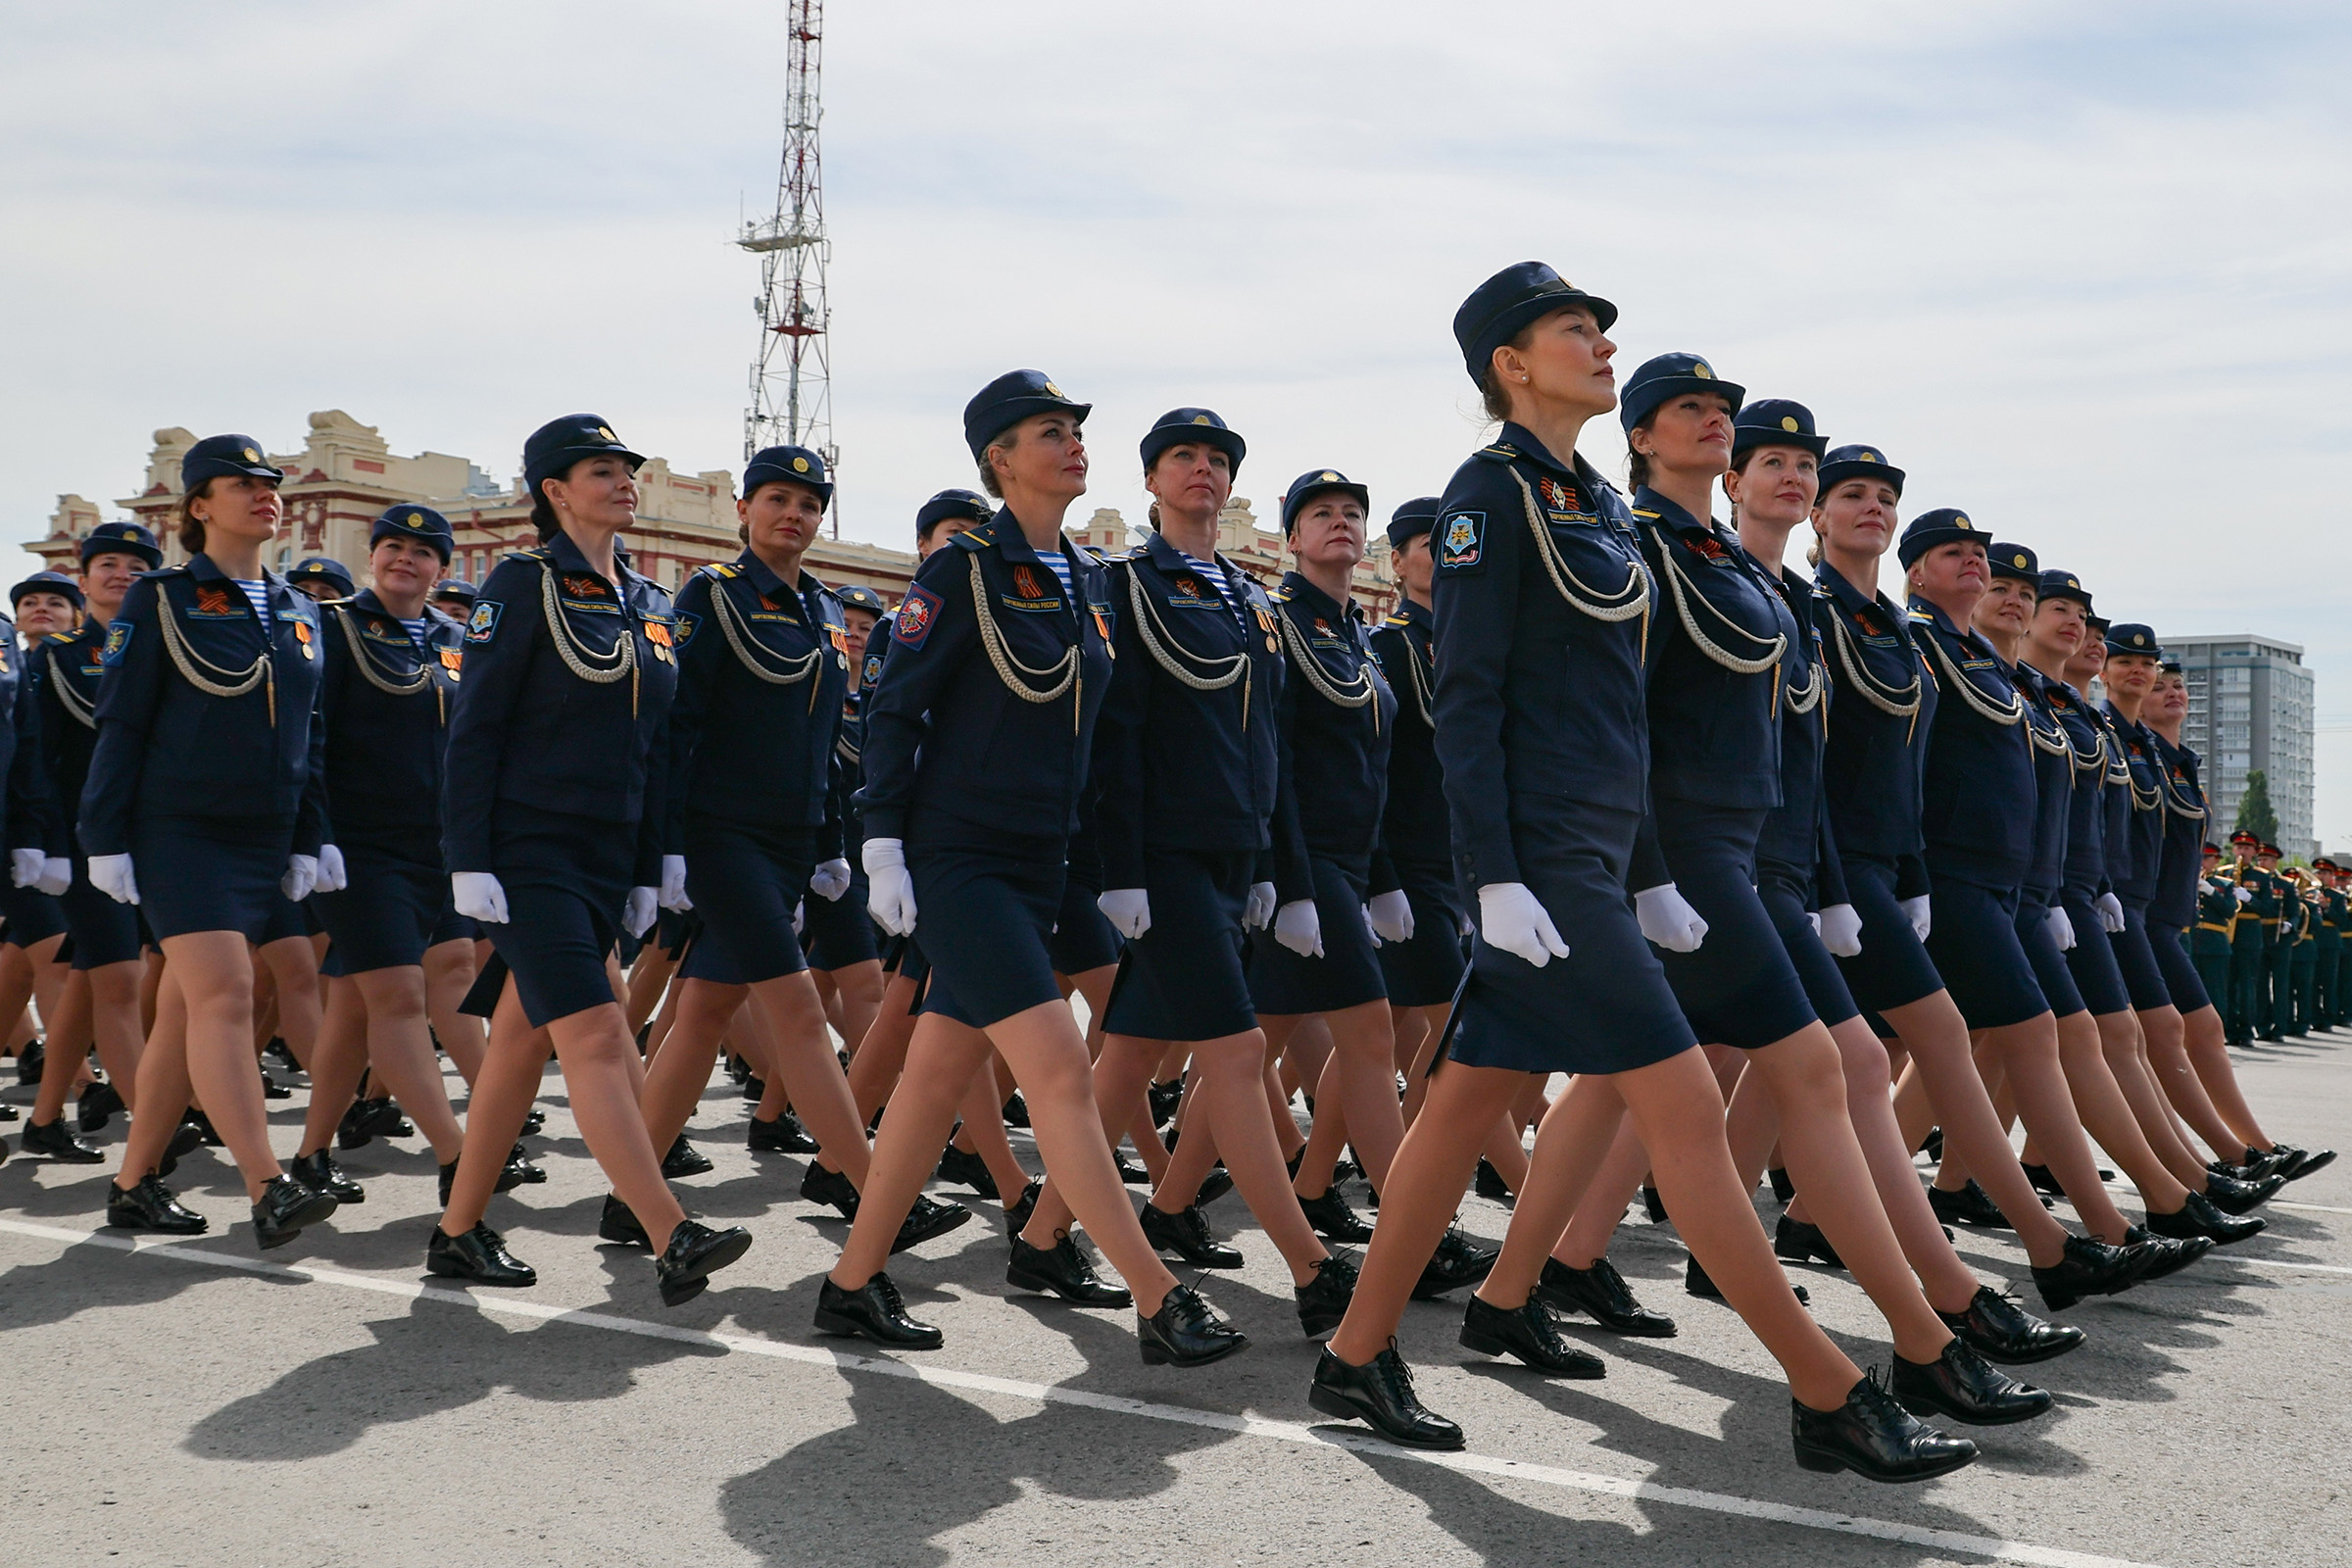 Ростов-на-Дону. Военнослужащие парадных расчетов во время парада.